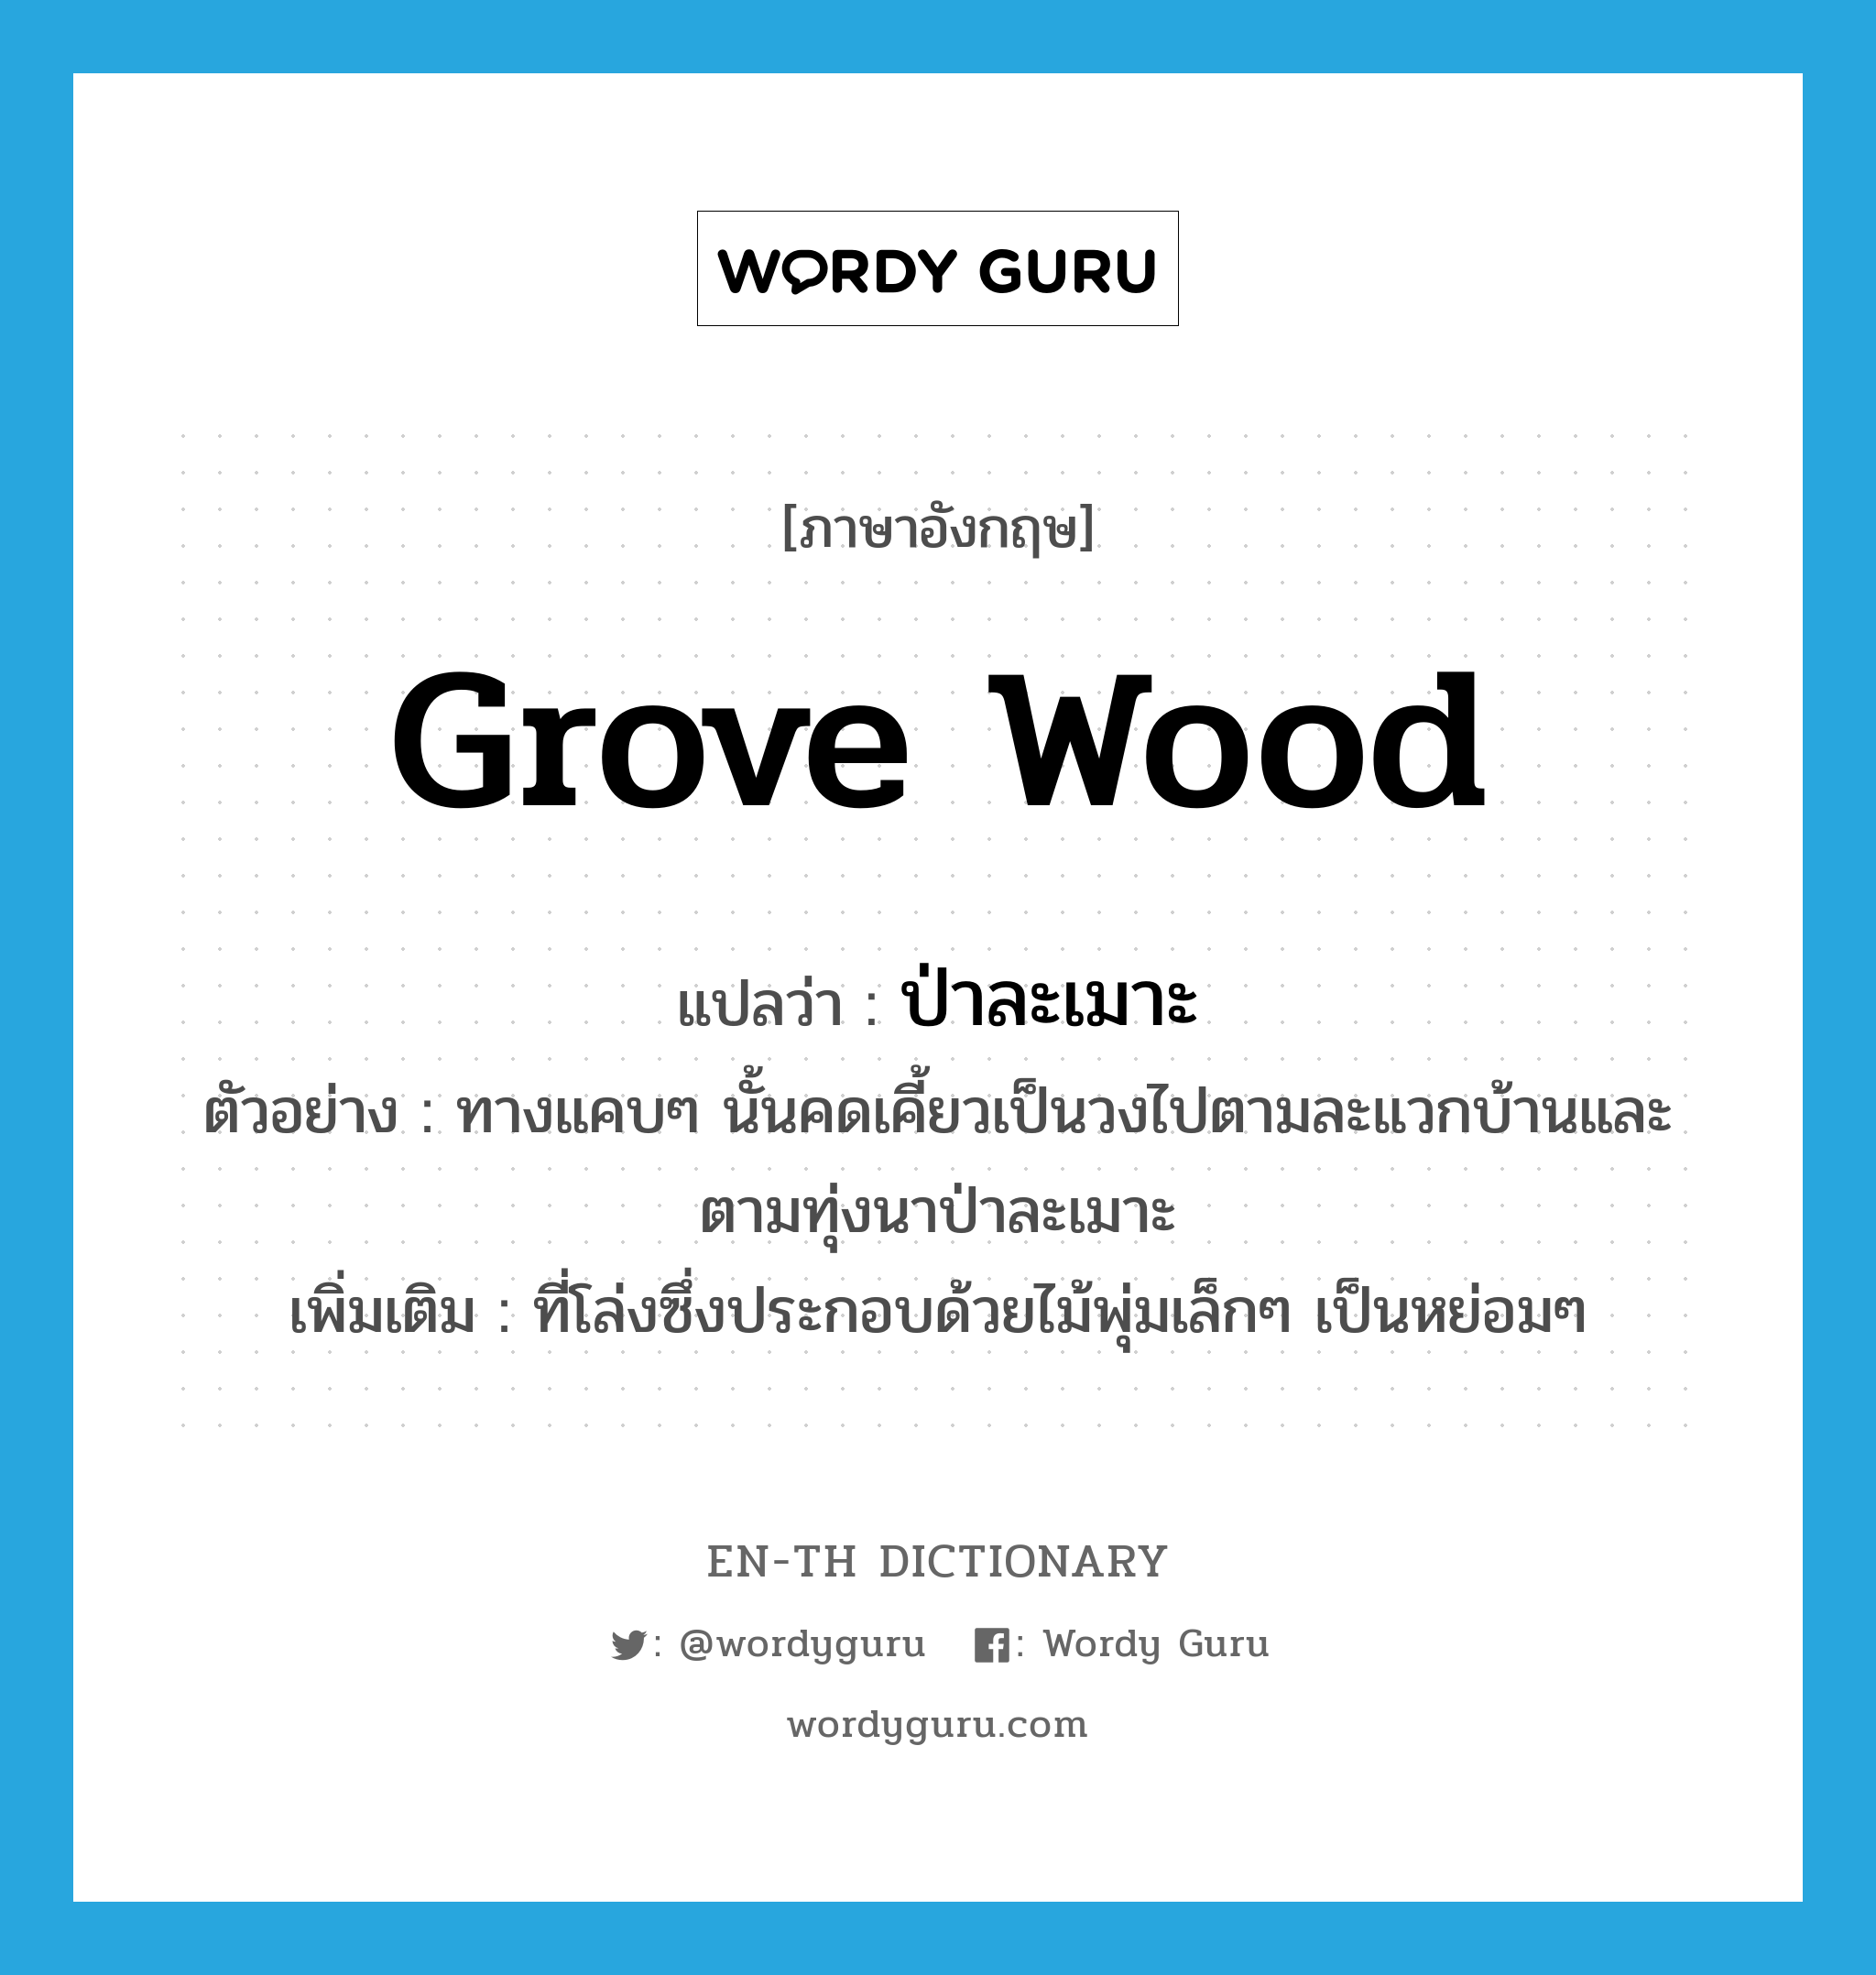 grove wood แปลว่า?, คำศัพท์ภาษาอังกฤษ grove wood แปลว่า ป่าละเมาะ ประเภท N ตัวอย่าง ทางแคบๆ นั้นคดเคี้ยวเป็นวงไปตามละแวกบ้านและตามทุ่งนาป่าละเมาะ เพิ่มเติม ที่โล่งซึ่งประกอบด้วยไม้พุ่มเล็กๆ เป็นหย่อมๆ หมวด N